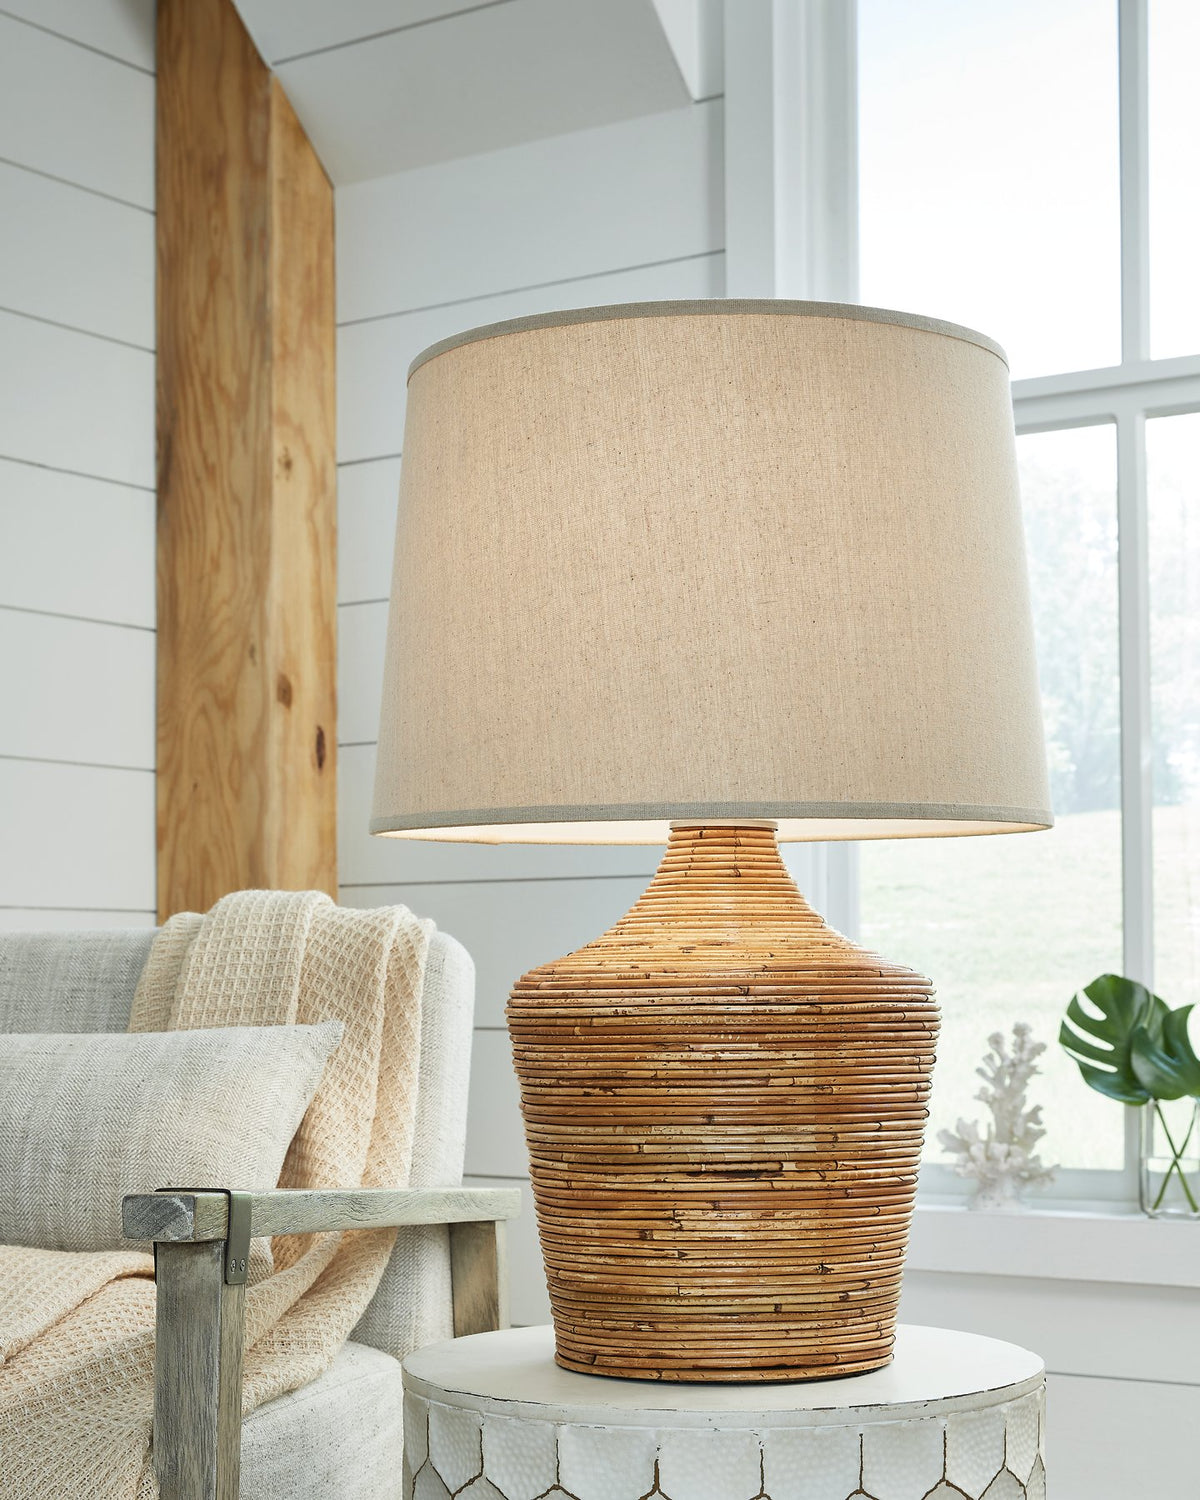 Kerrus Table Lamp - Half Price Furniture